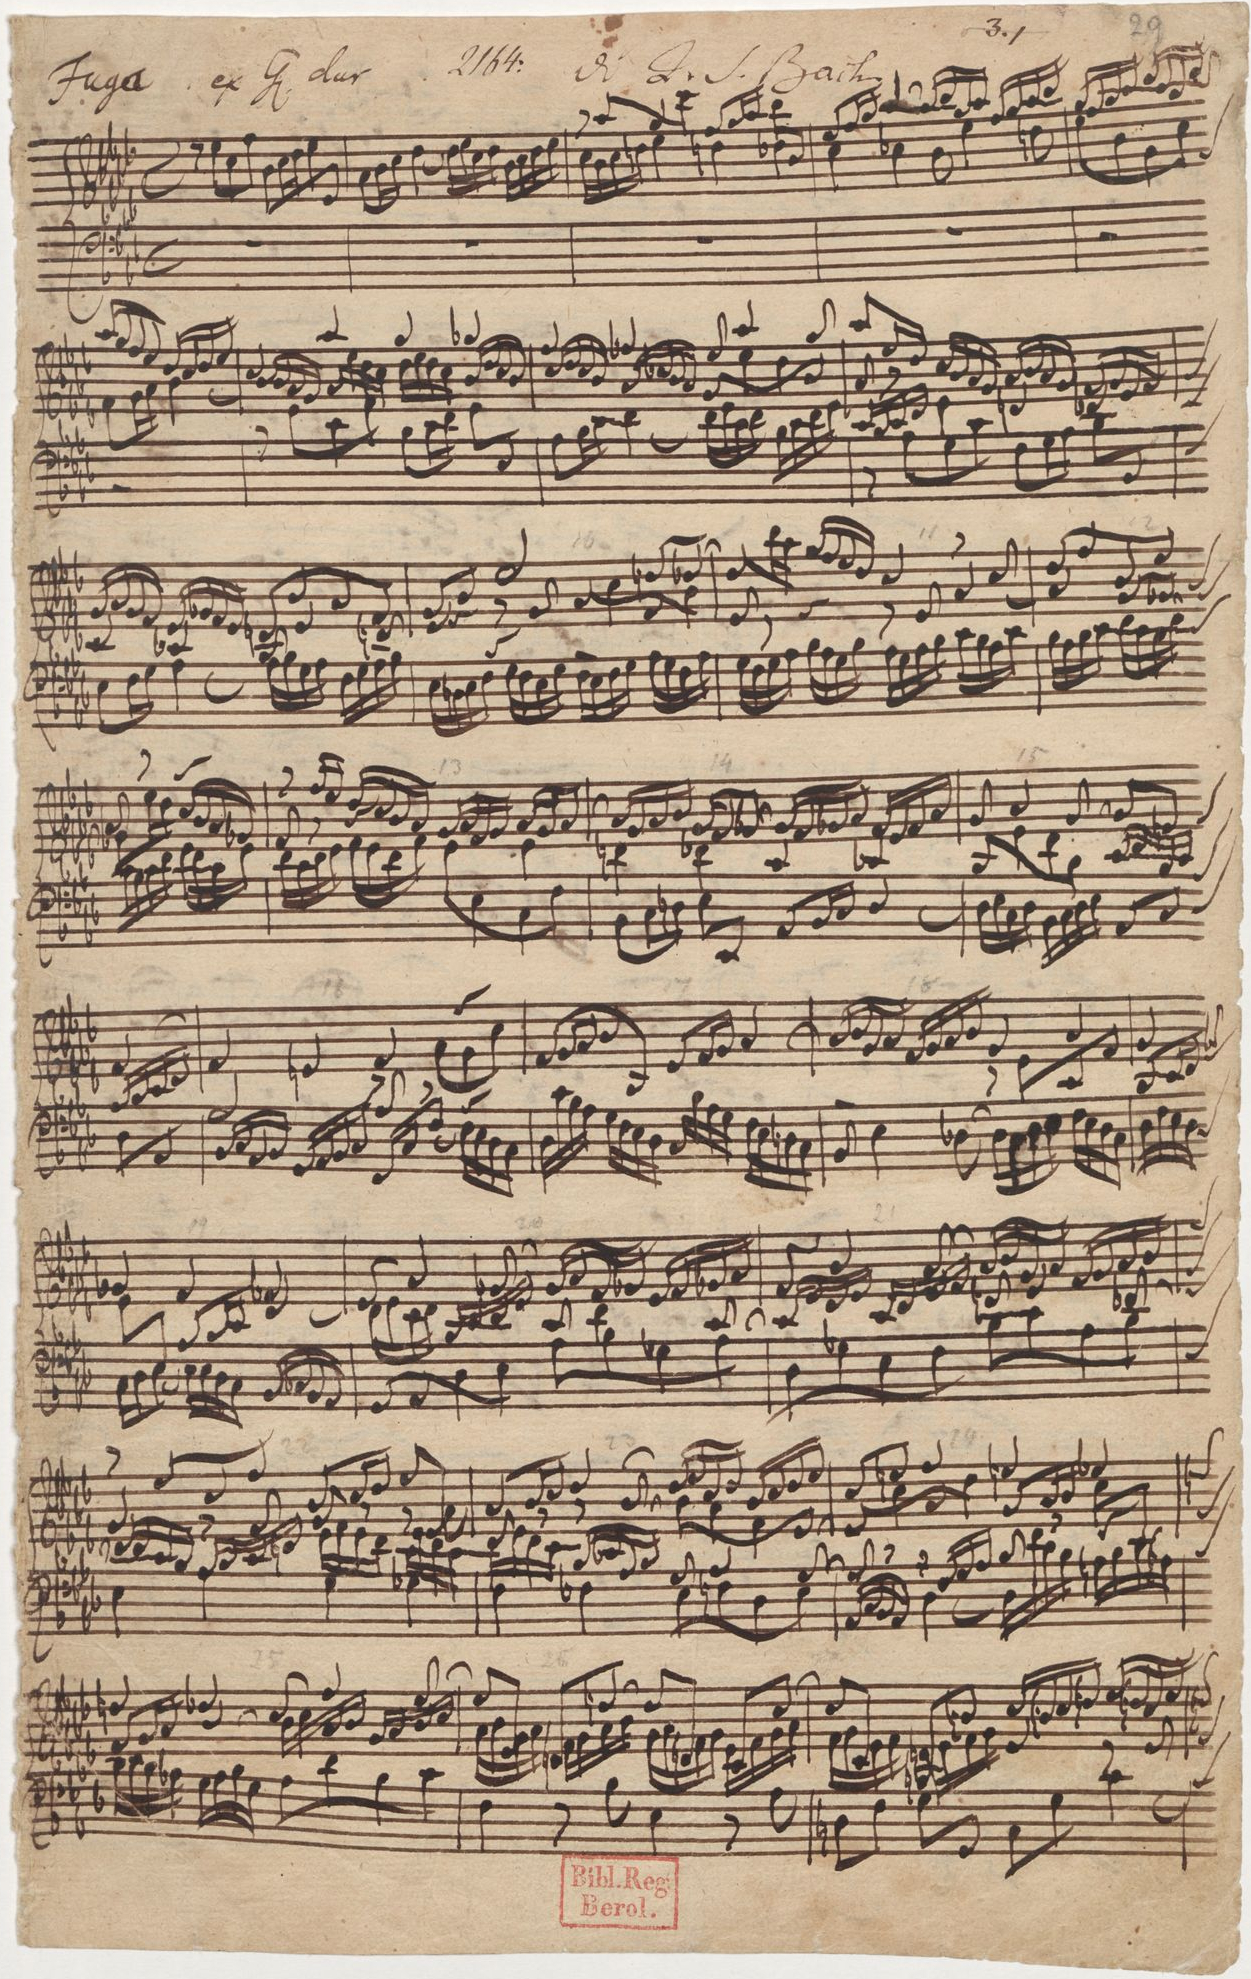 Fig. 1 - Pagina autografa della fuga in Lab maggiore dal secondo libro del Clavicembalo Ben Temperato di Johann S. Bach (1685-1750), una delle prime opere musicali a fare uso del temperamento equabile - Crediti: libreria di stato di Berlino, immagine di pubblico dominio.